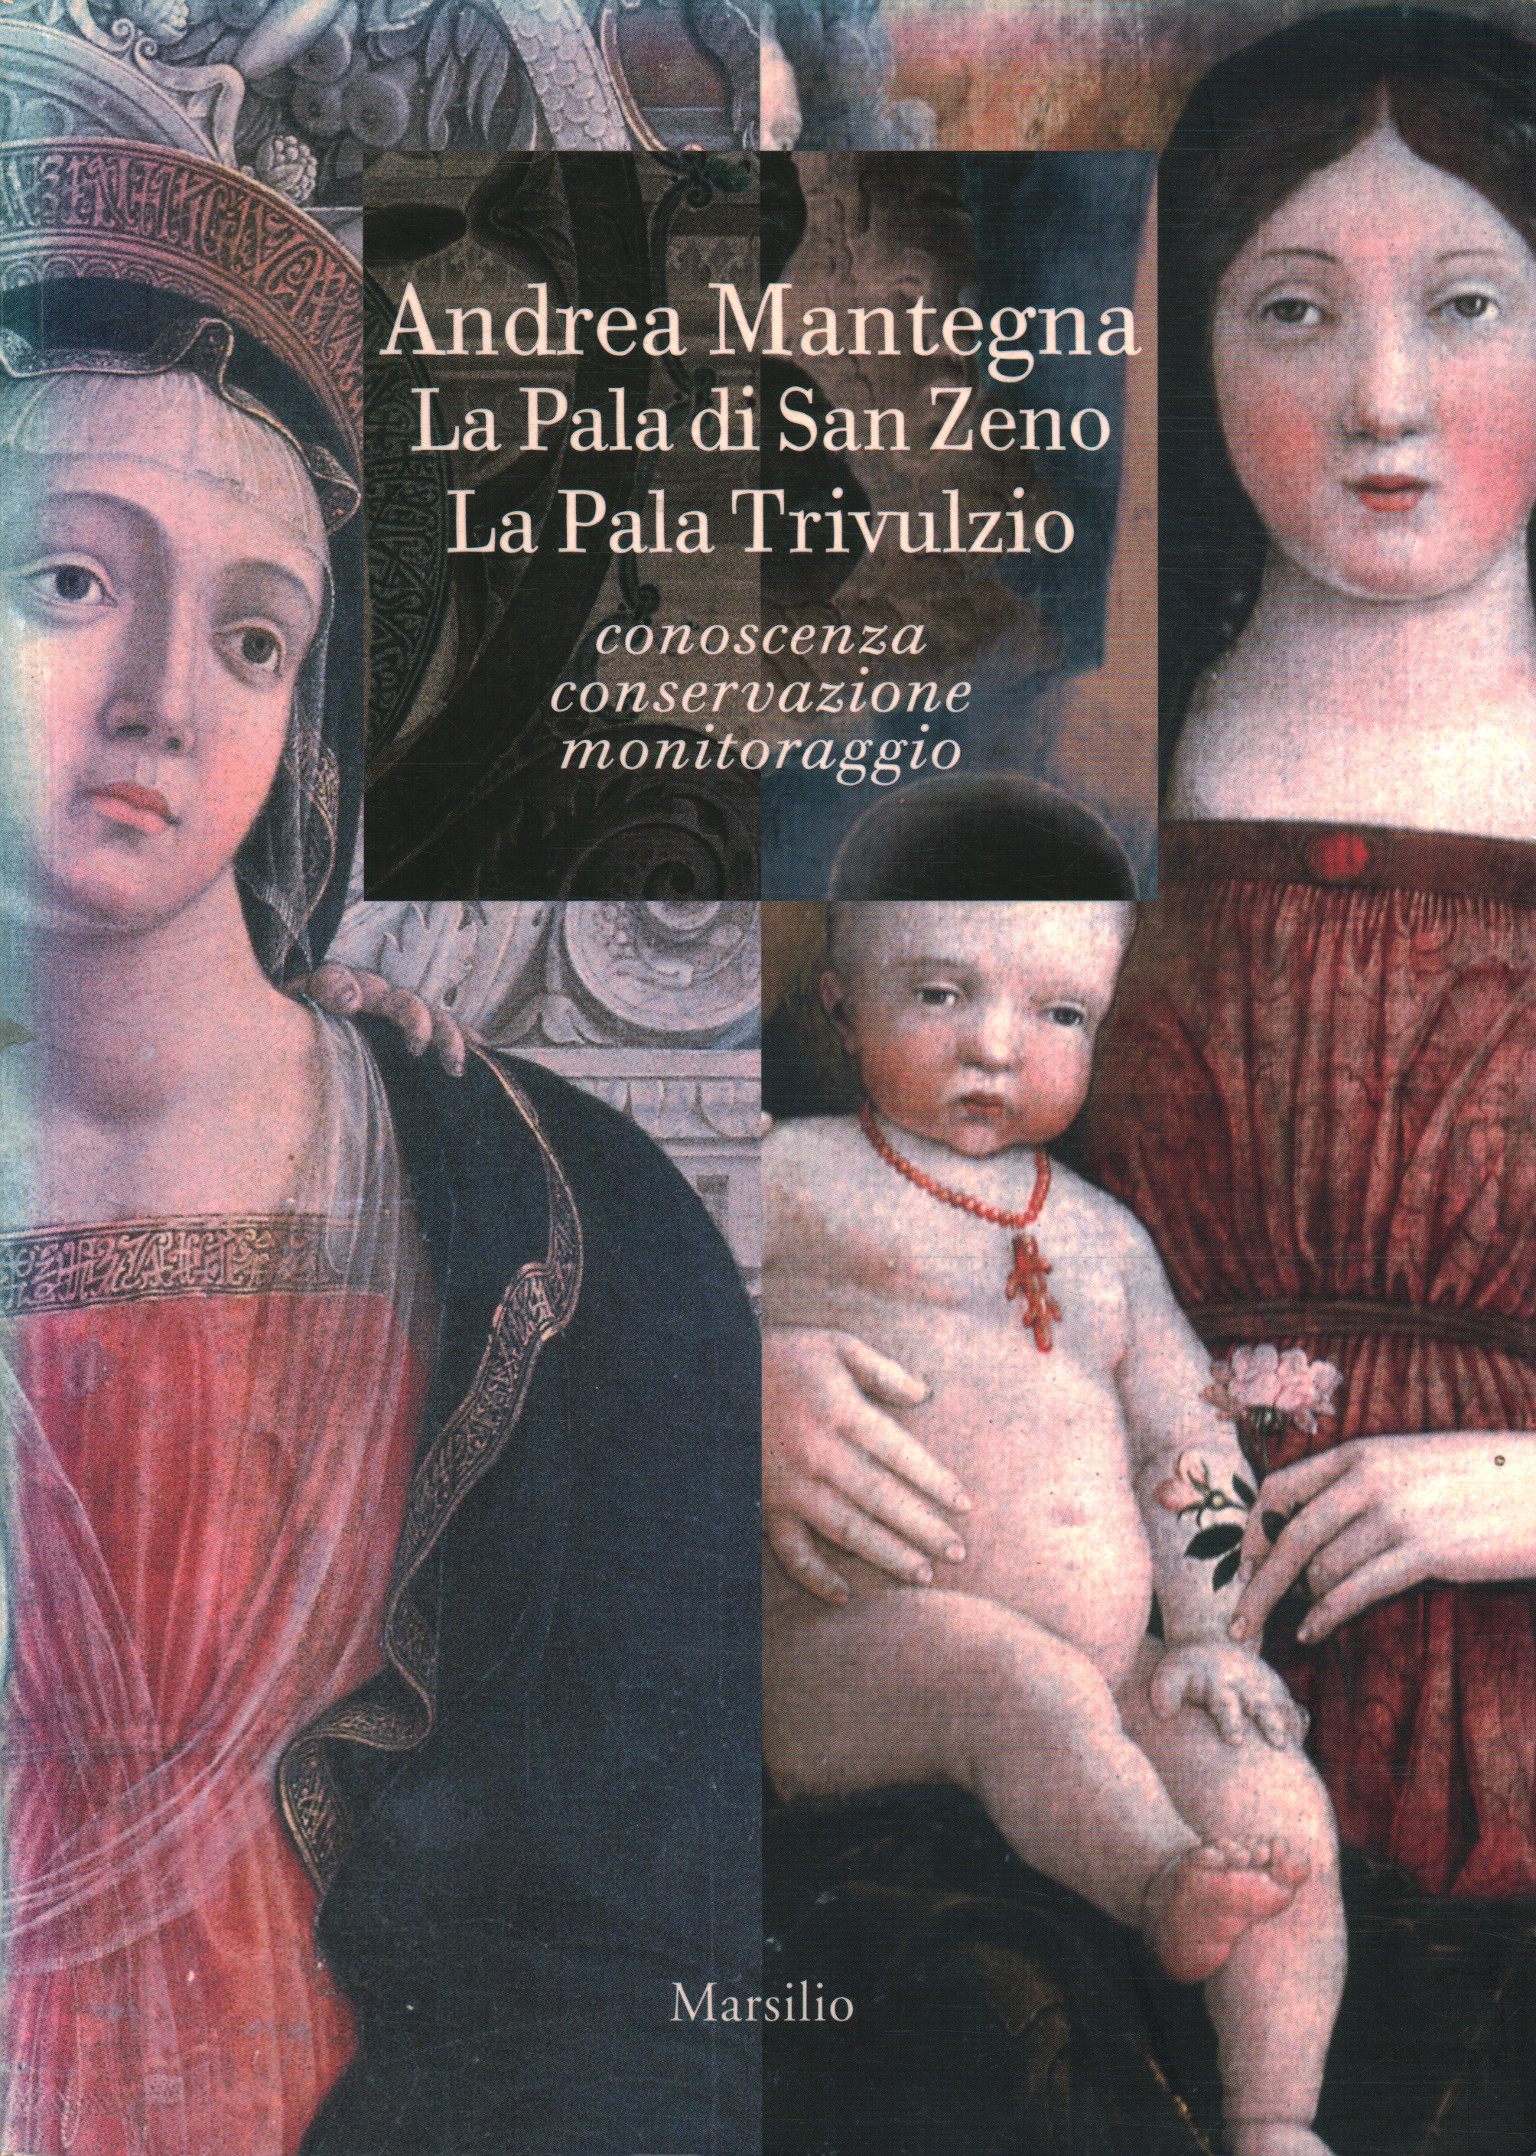 Andrea Mantegna. La Pala di San Zeno%2,Andrea Mantegna. La Pala di San Zeno%2